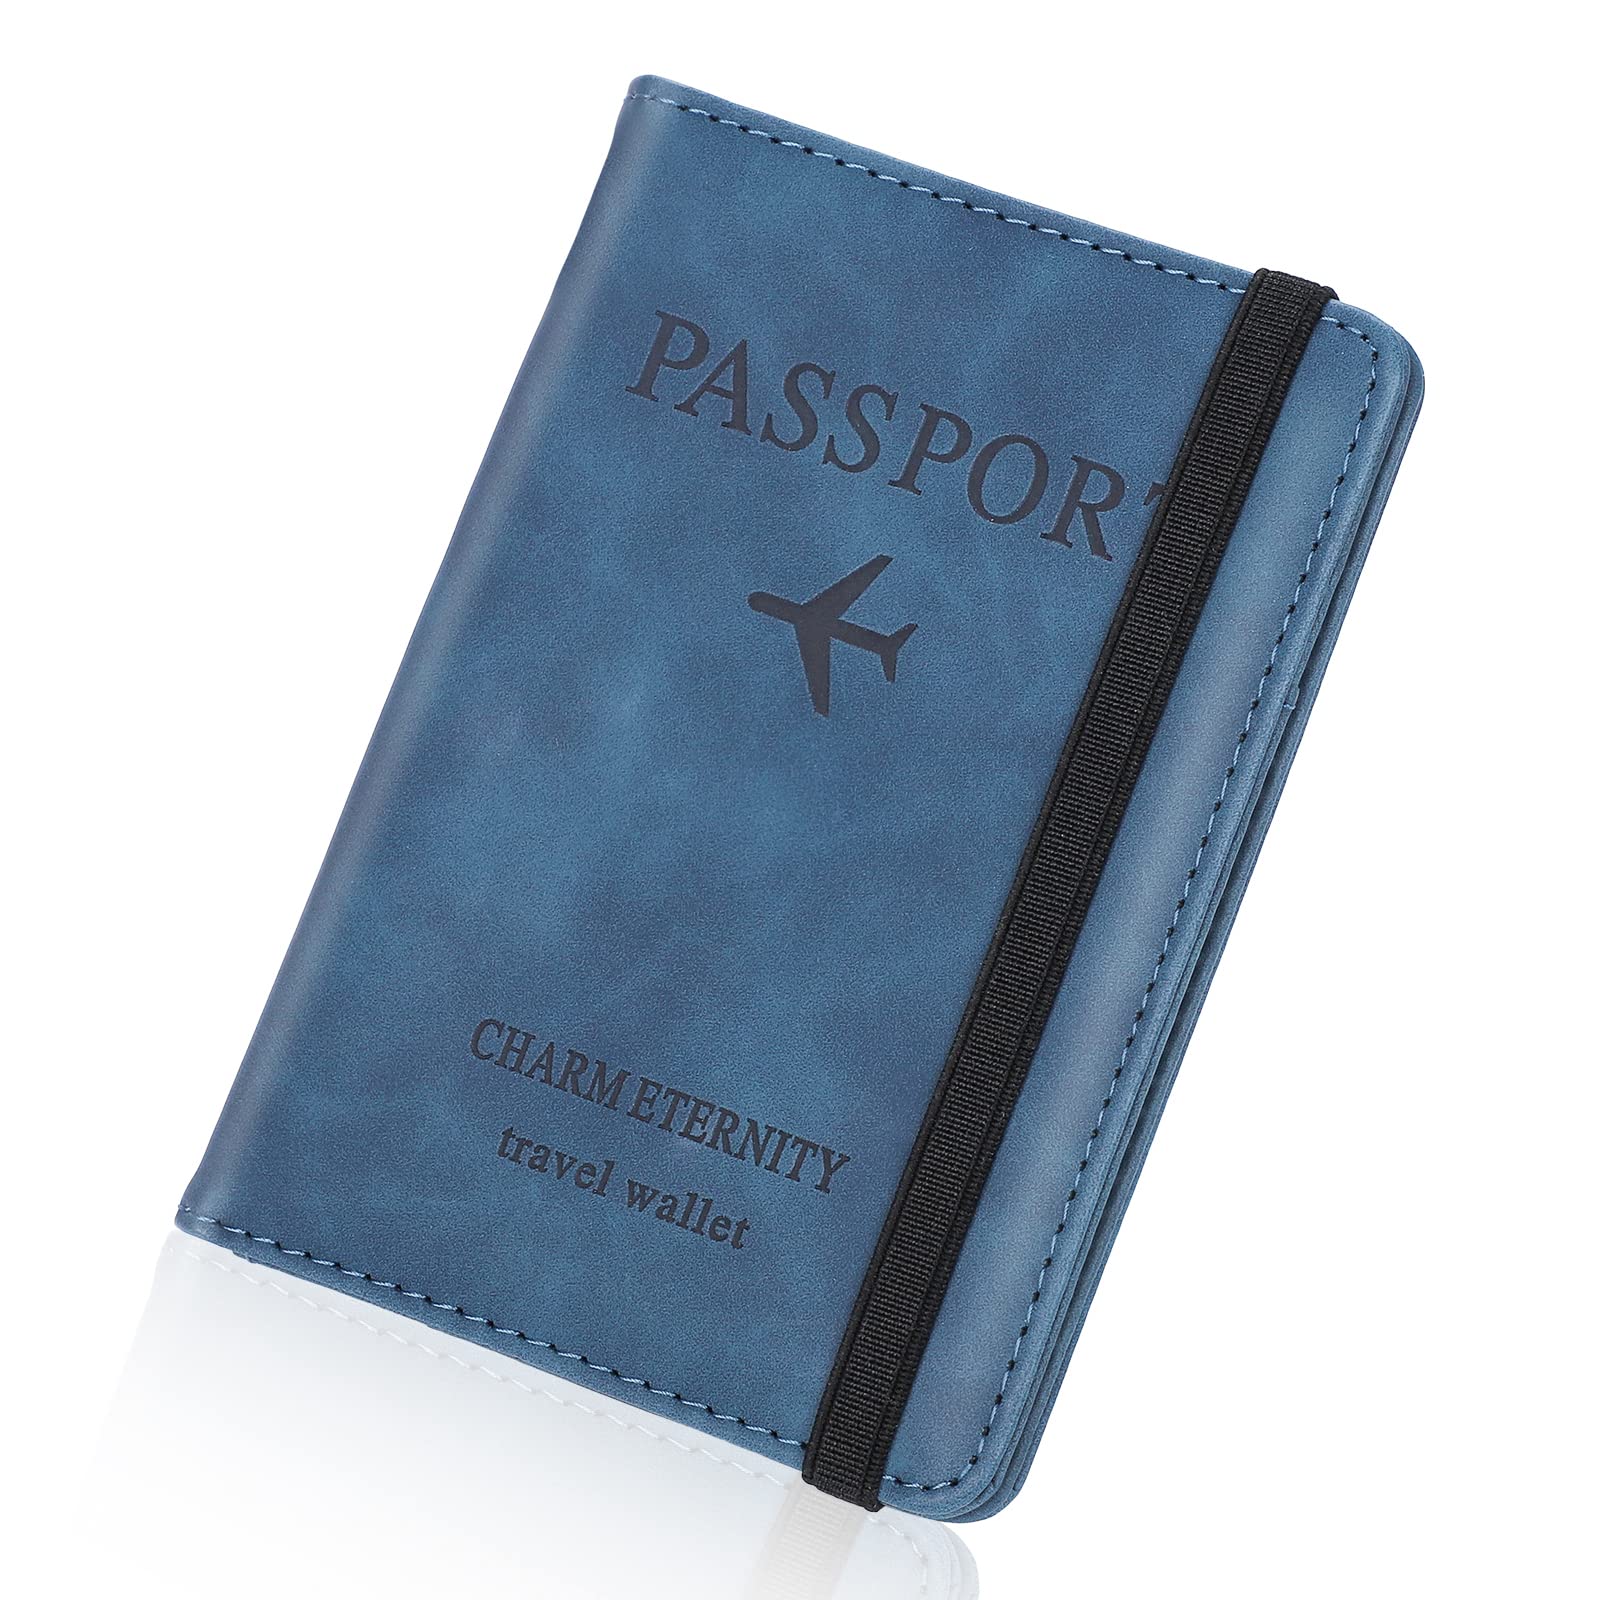 Abordable Larkumio Pochette Passeport Porte Feuille Voyage, Protege Passeport avec Etui Anti RFID, Porte Passeport en Cuir PU pour Hommes et Femmes Accessoires de Voyage (Bleu) uNZOr3c2J en vente